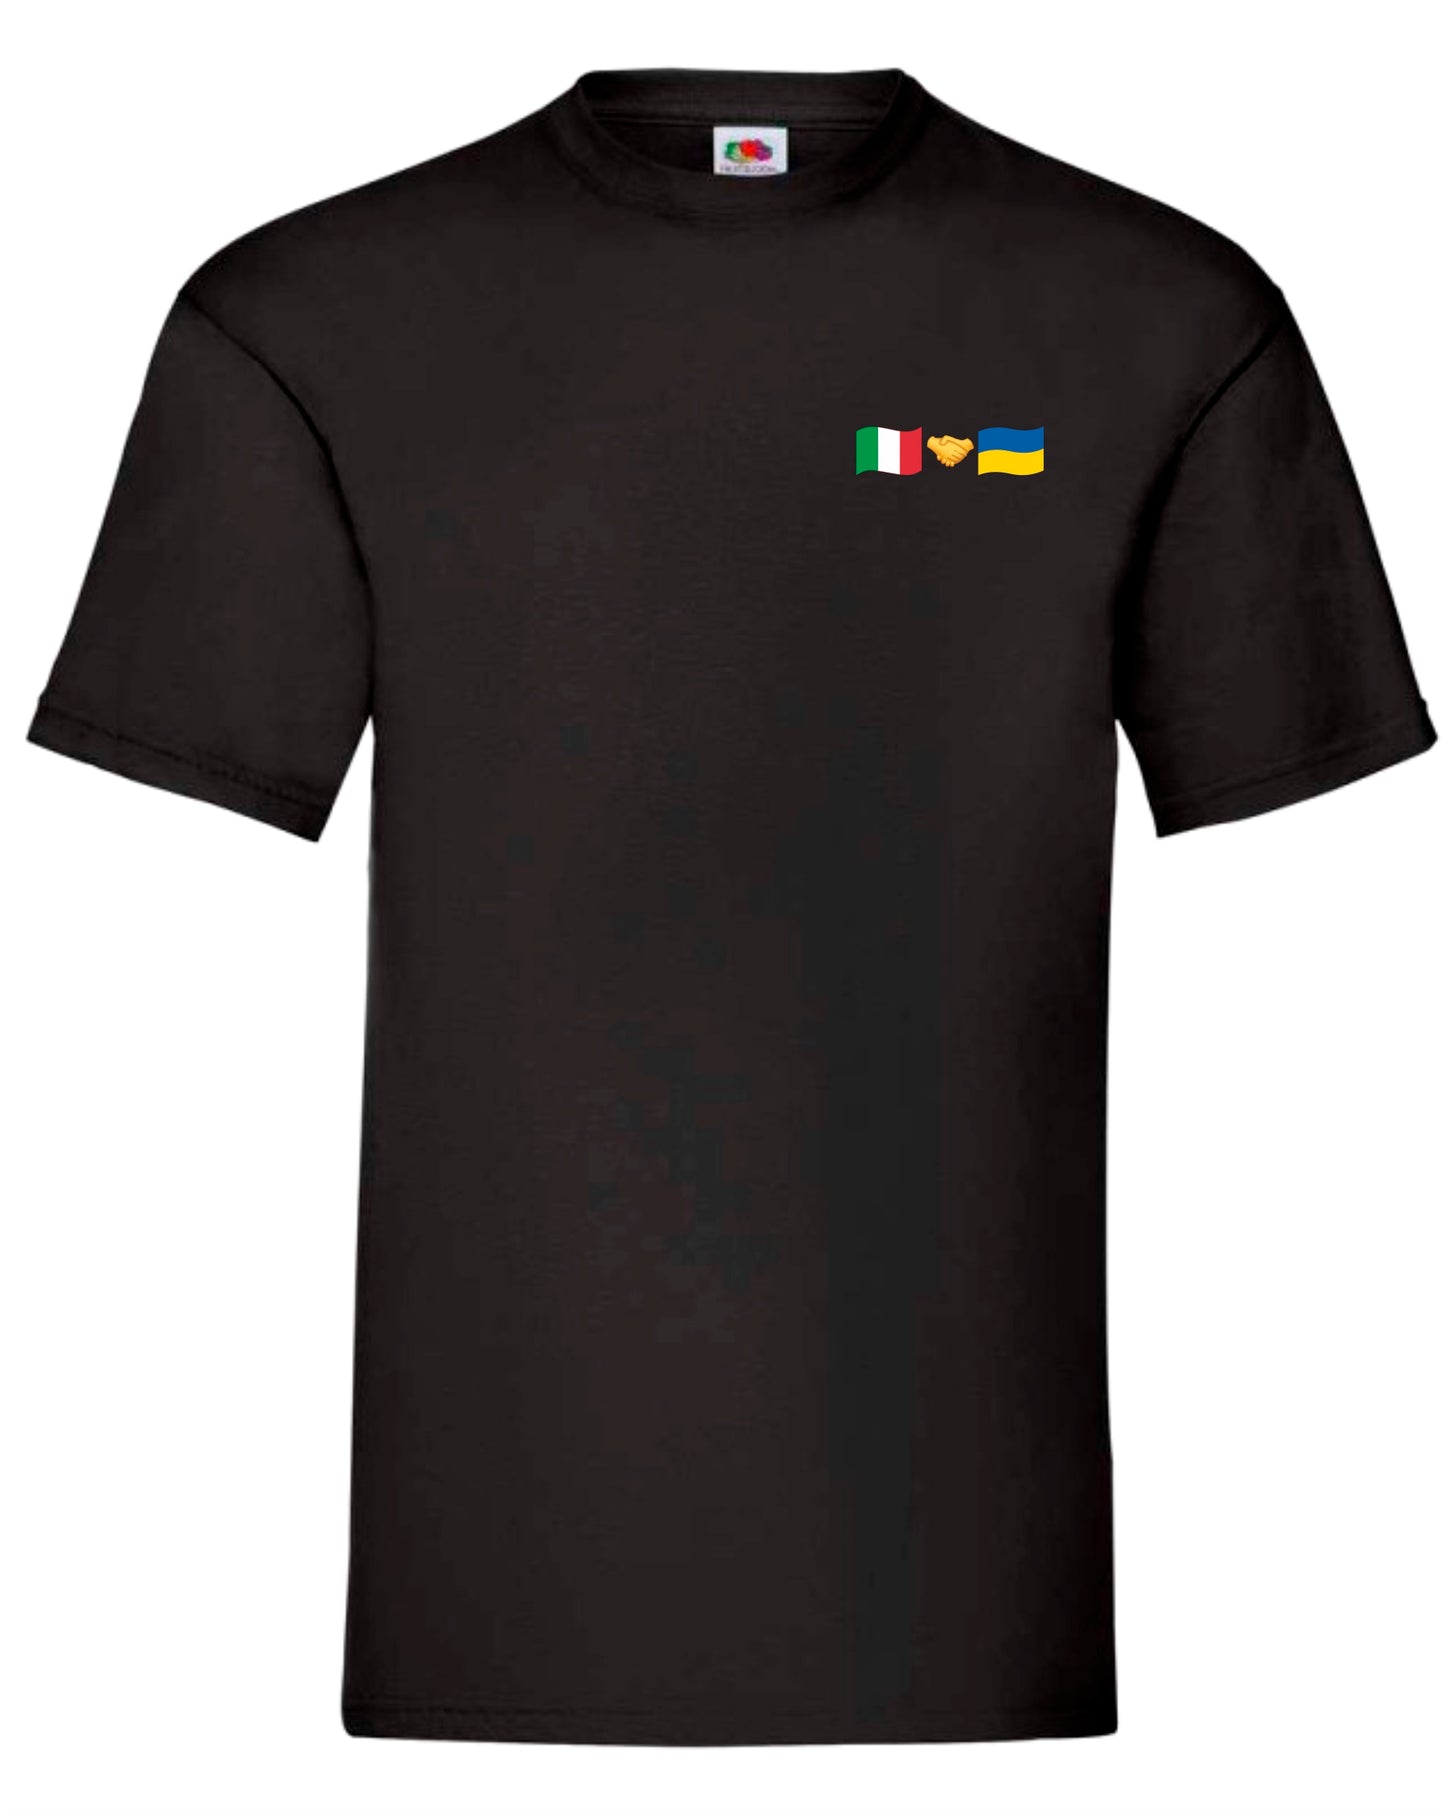 T-shirt Italy + Ukraine (small logo)